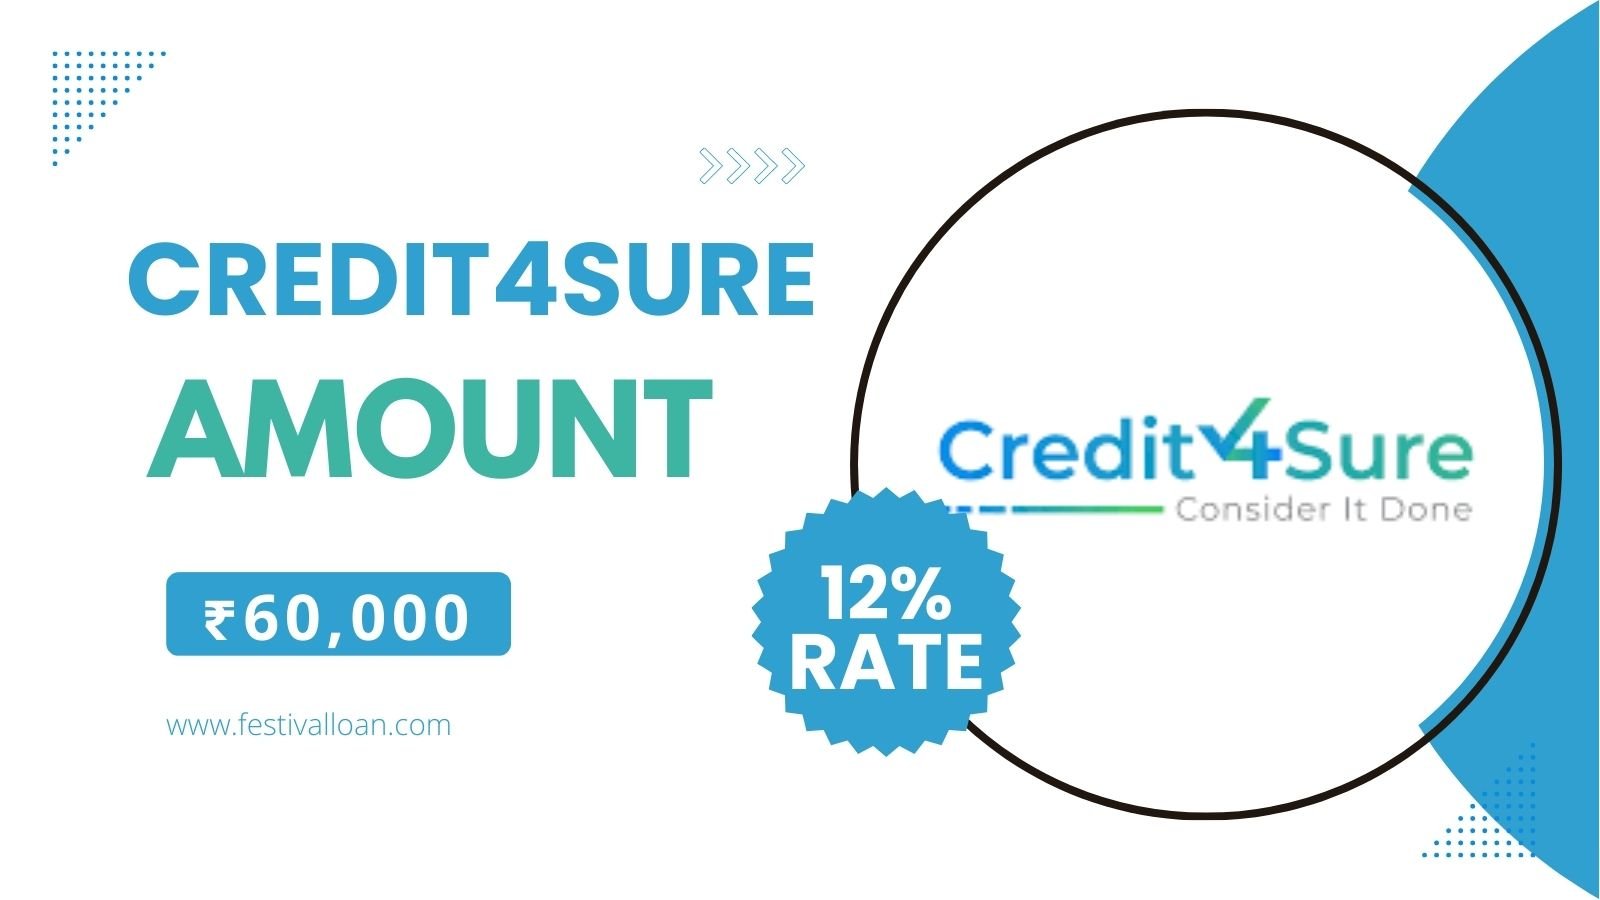 Credit4sure Loan App से आपको कितना लोन मिलेगा?